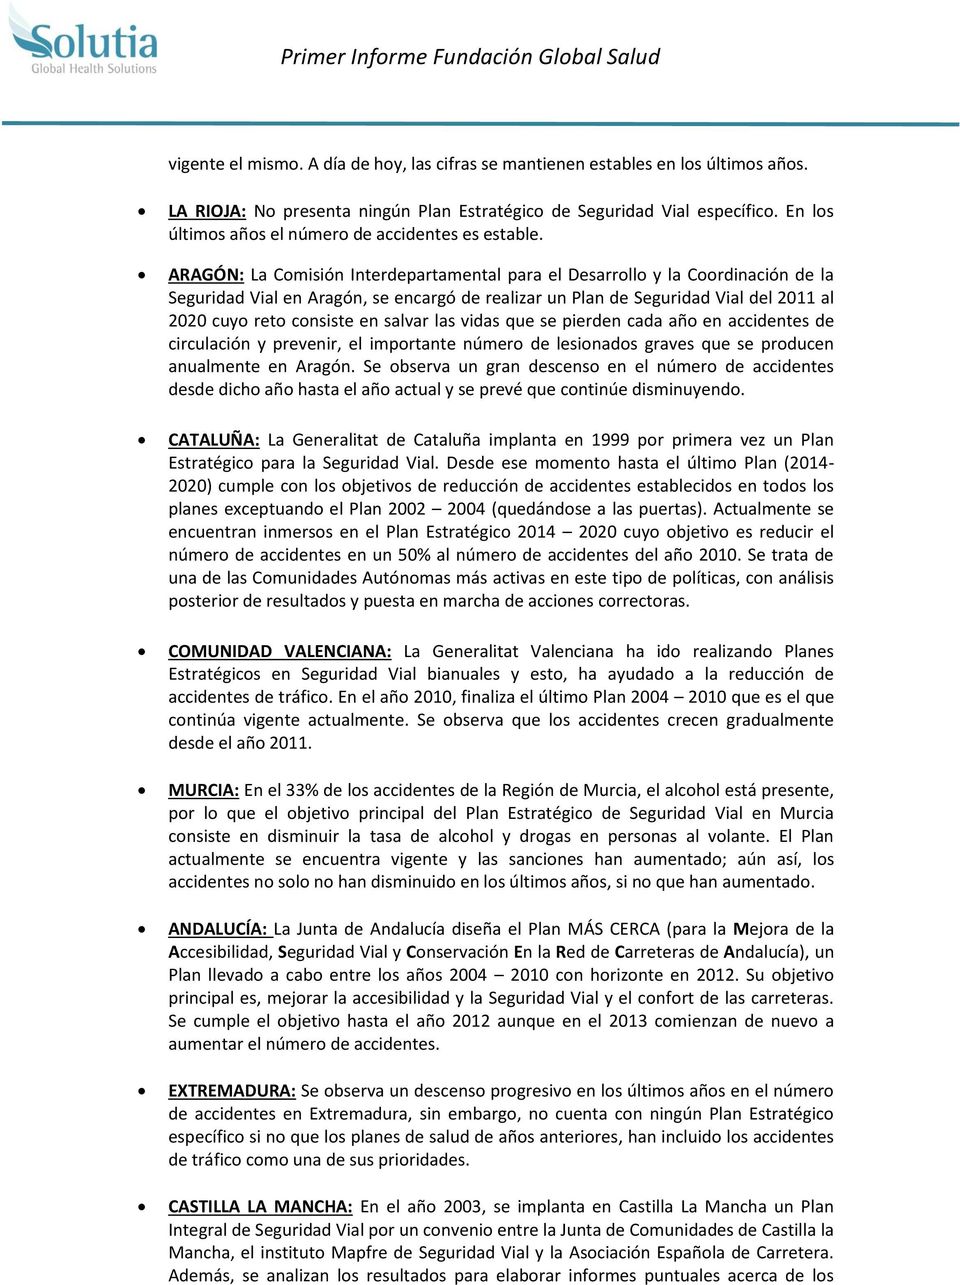 ARAGÓN: La Comisión Interdepartamental para el Desarrollo y la Coordinación de la Seguridad Vial en Aragón, se encargó de realizar un Plan de Seguridad Vial del 2011 al 2020 cuyo reto consiste en